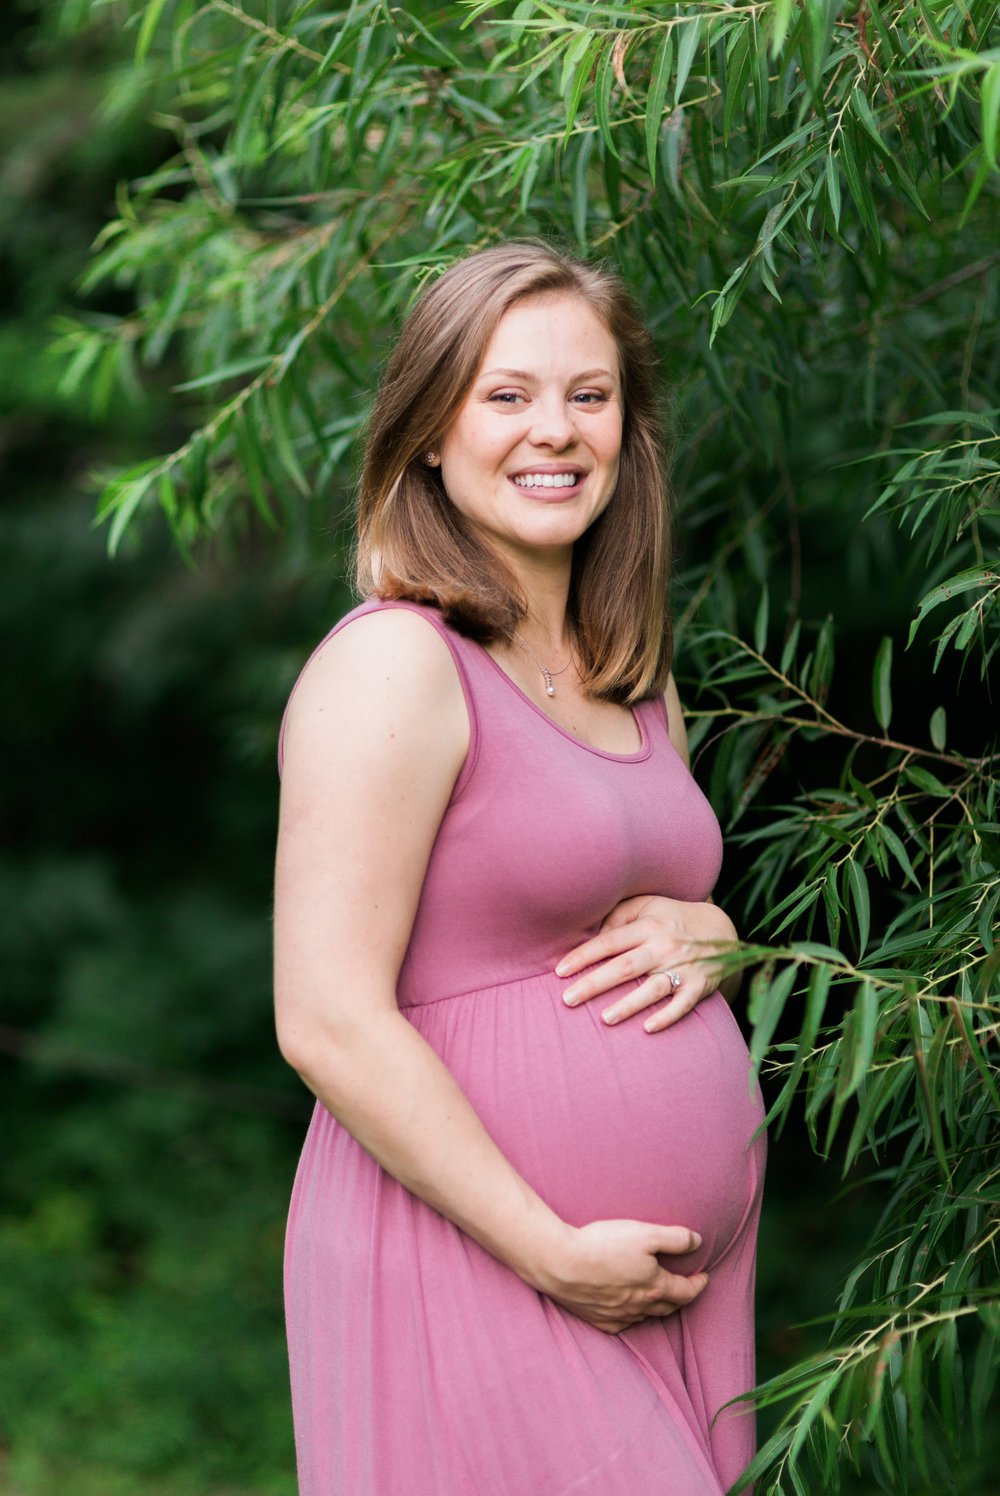 Pregnant woman smiling at Lake Mercer in Springfield, VA